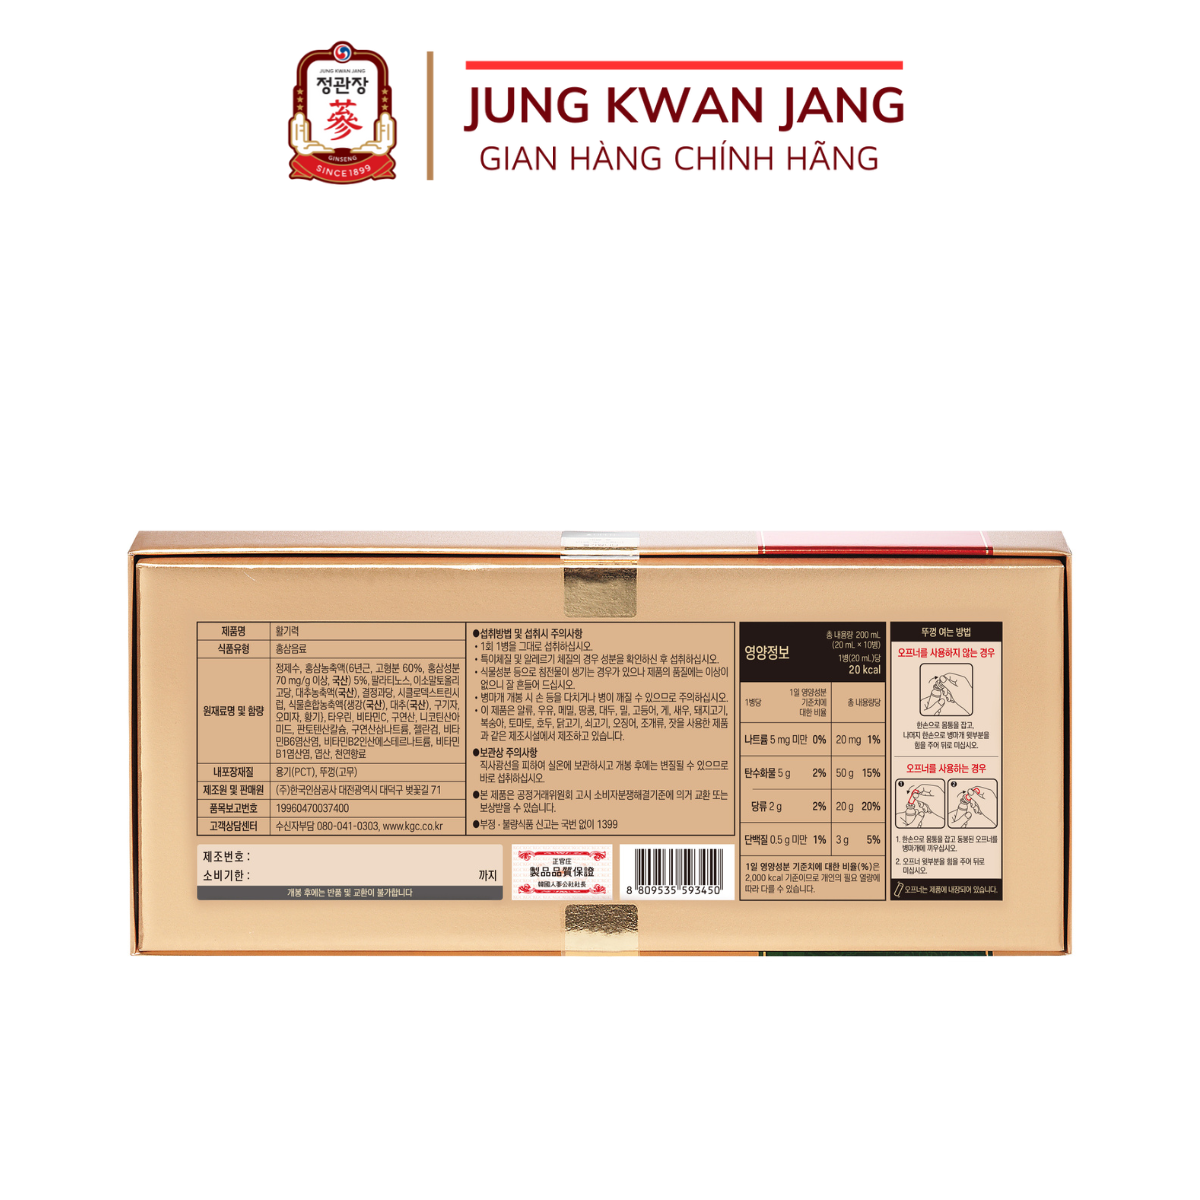 Nước uống Hồng Sâm KGC Jung Kwan Jang Hwal Gi Ruk (20ml x 10 Ống)